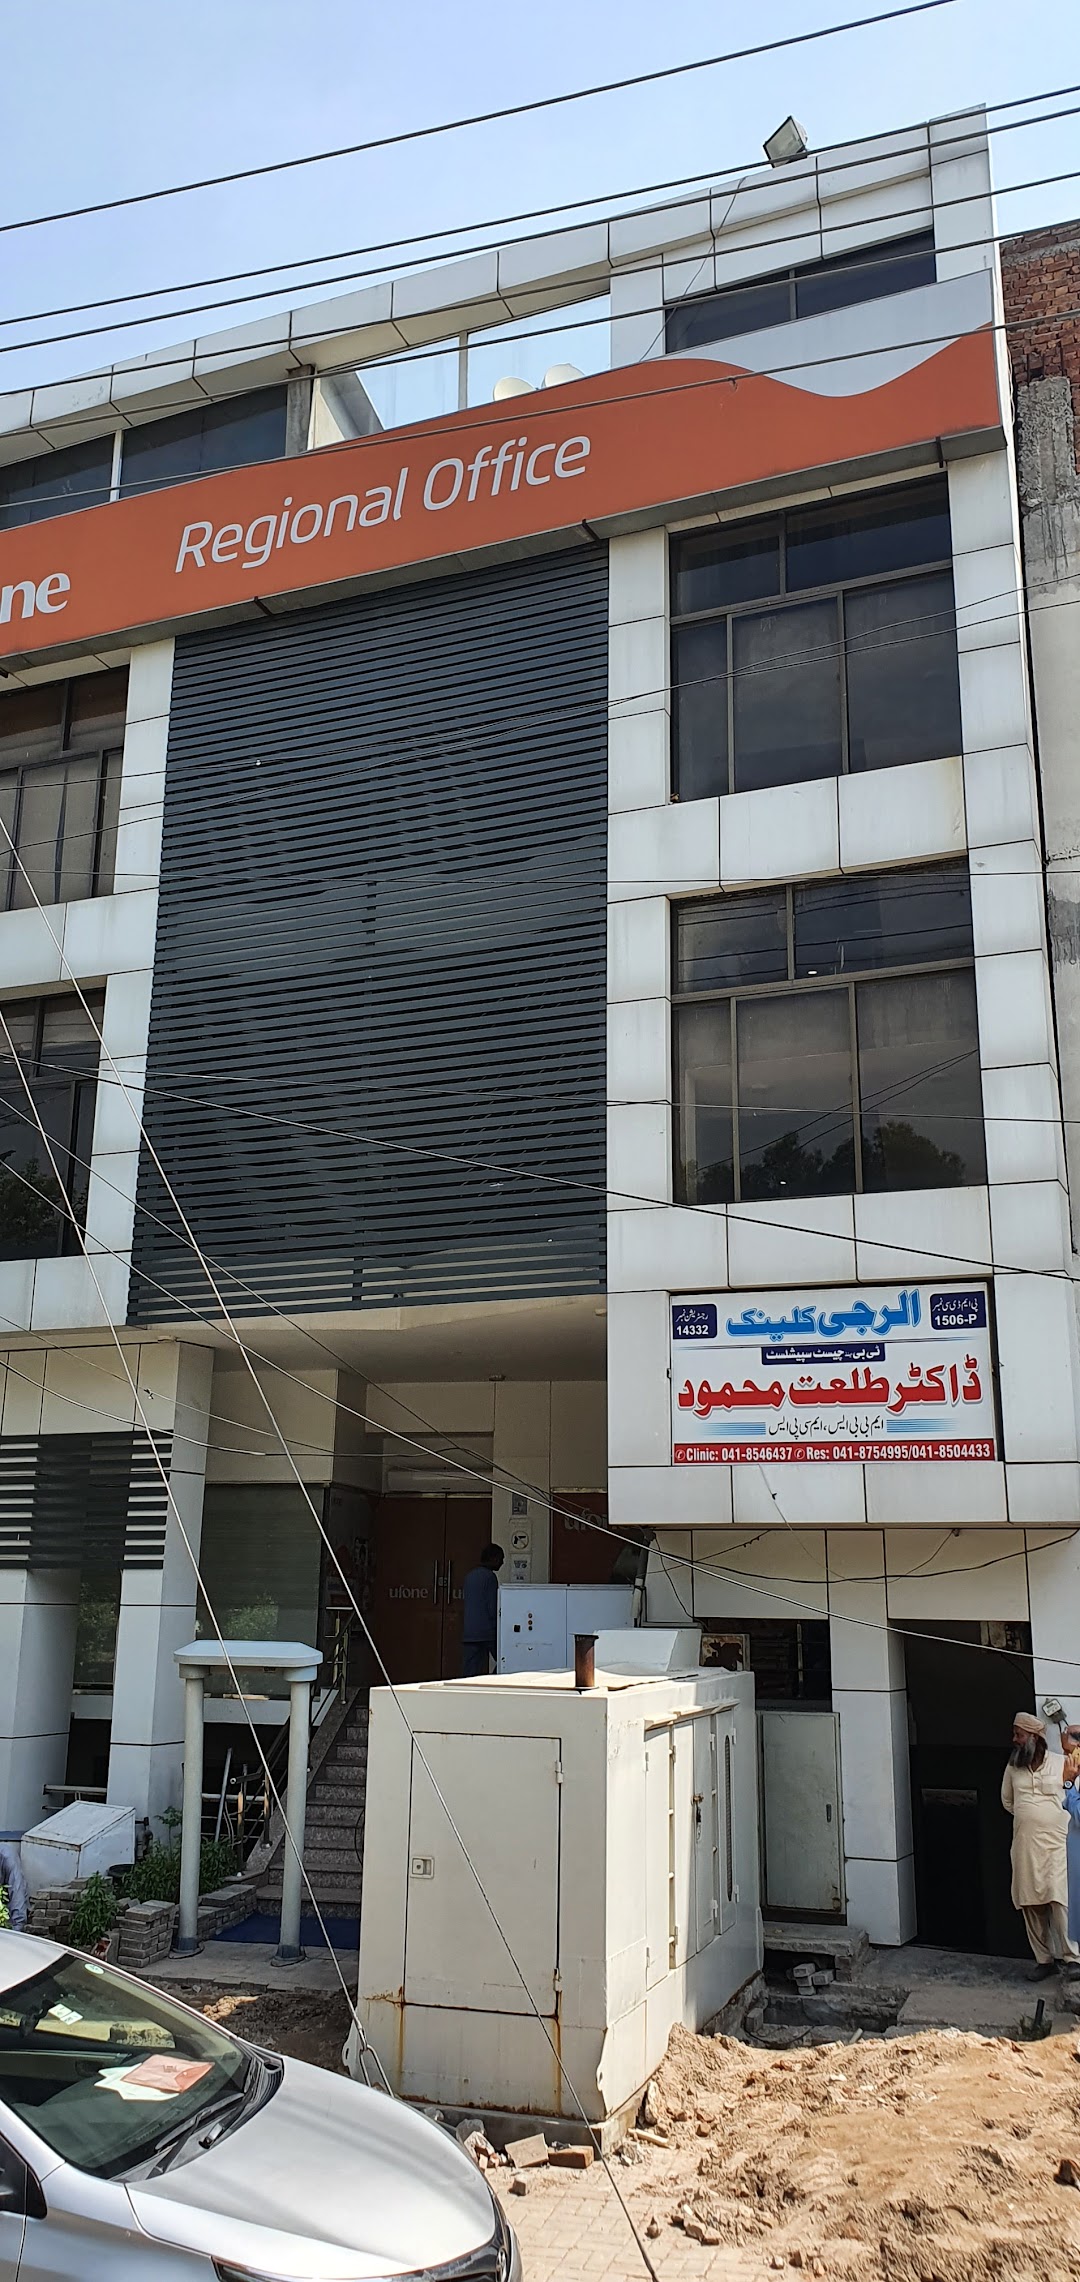 The Allergy Clinic (Dr. Talat Mahmood)